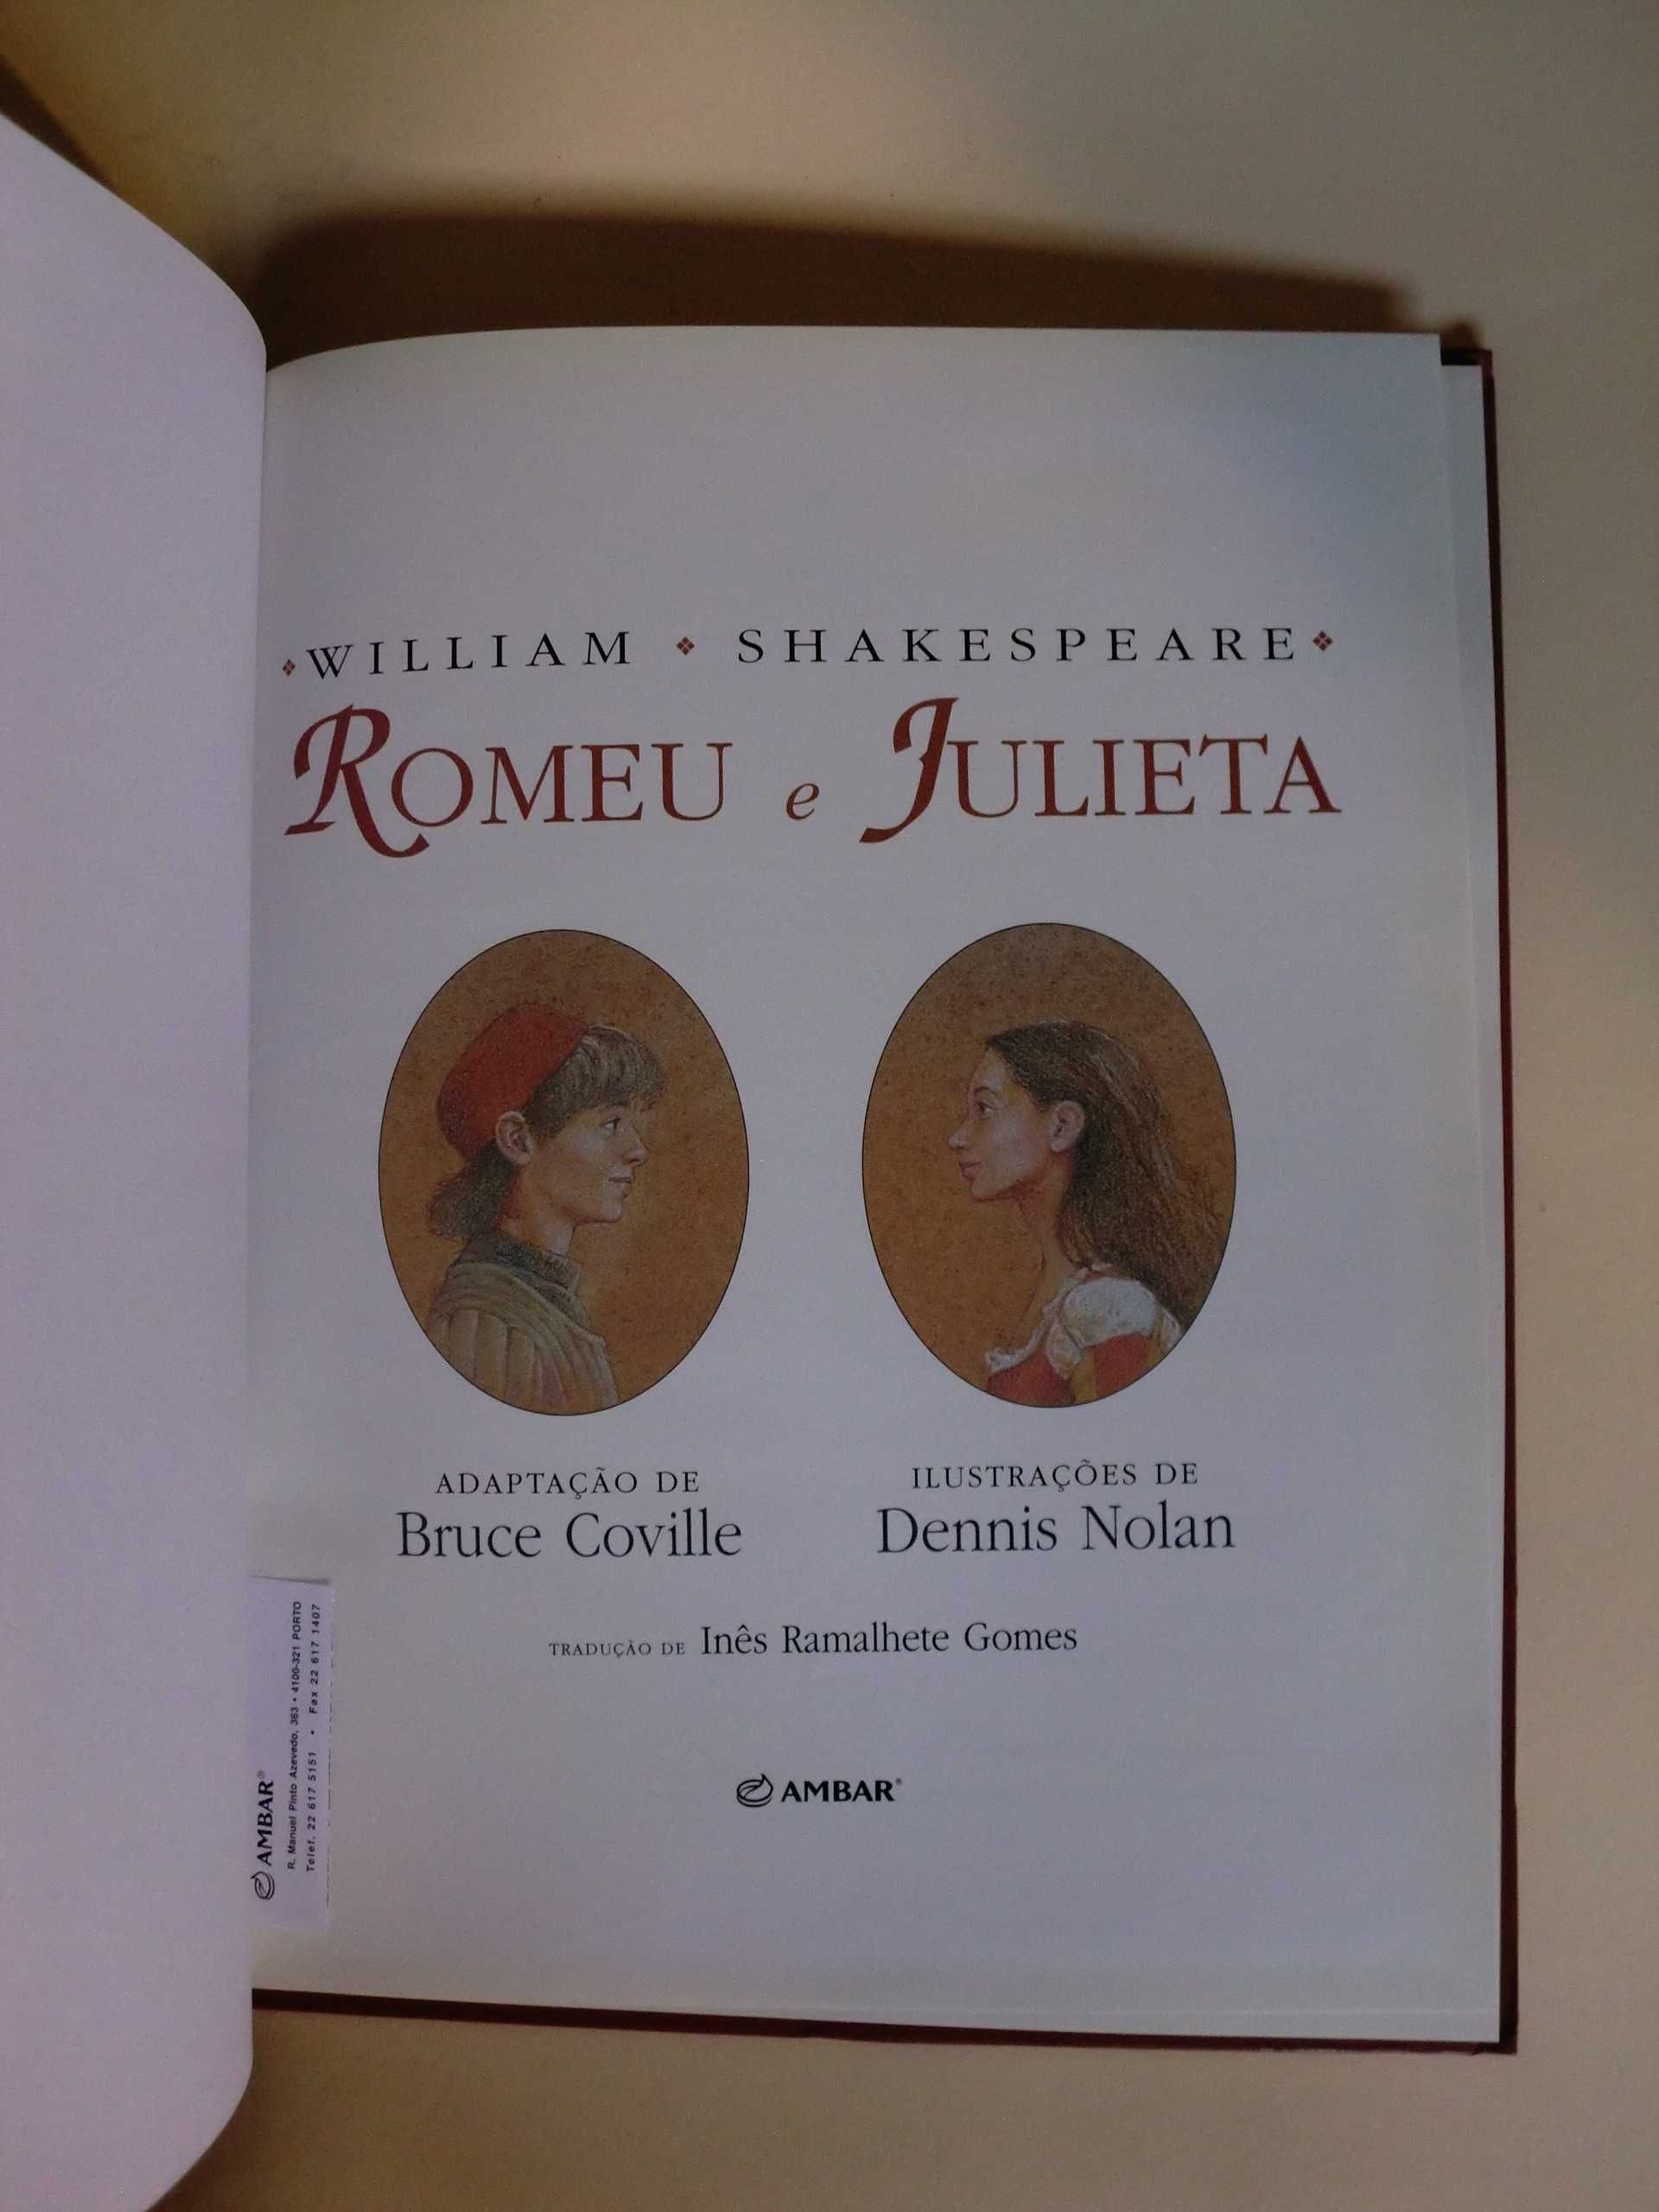 Romeu e Julieta
de William Shakespeare